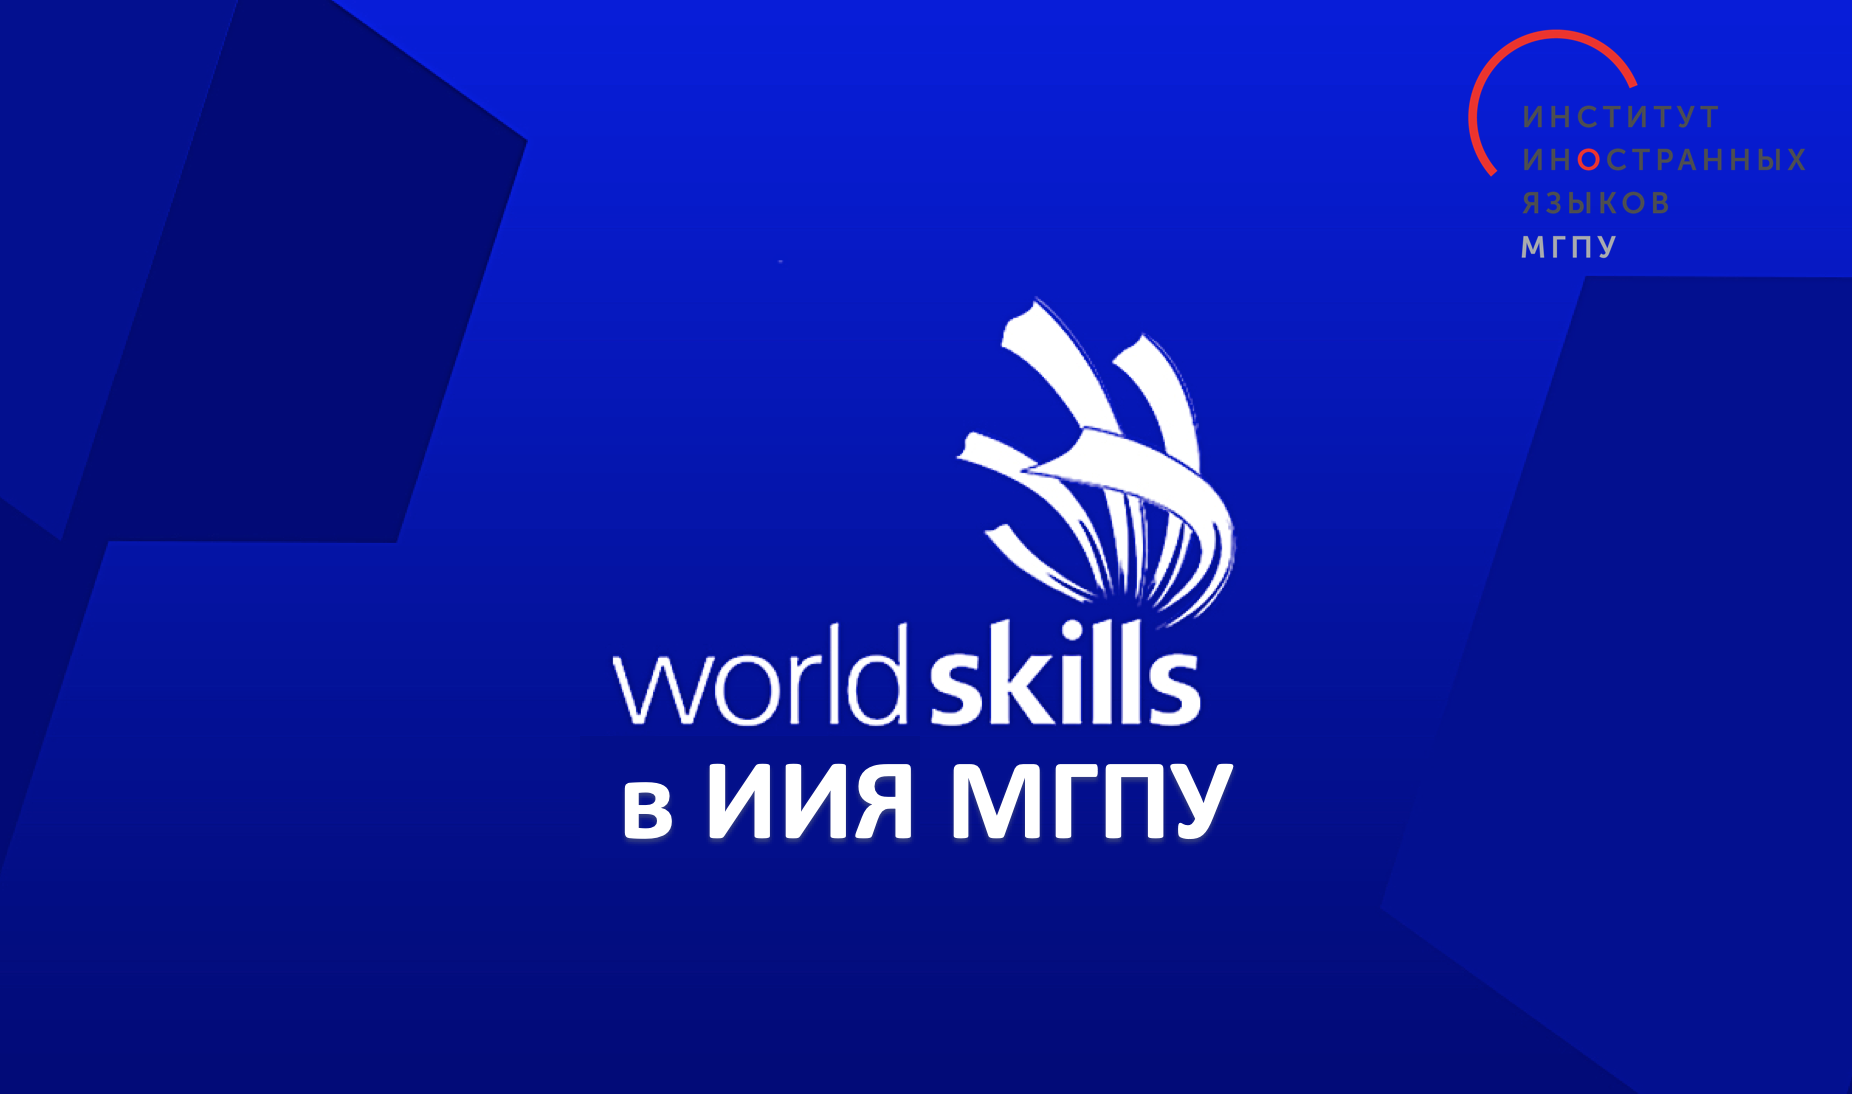 Worldskills: в сентябре 2020 года пройдёт открытый вузовский чемпионат МГПУ